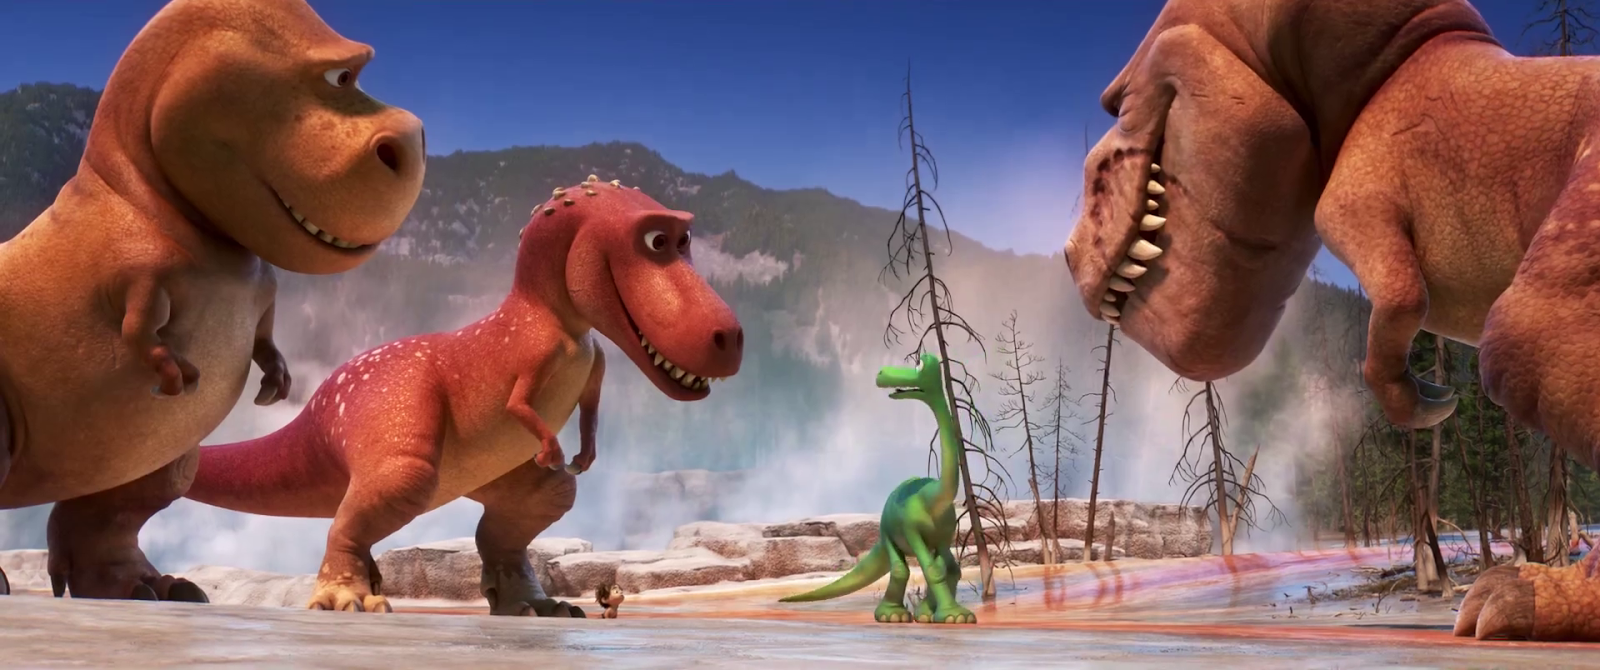 Включи добро динозавров. Динозавр из мультфильма. Добрый динозавр.